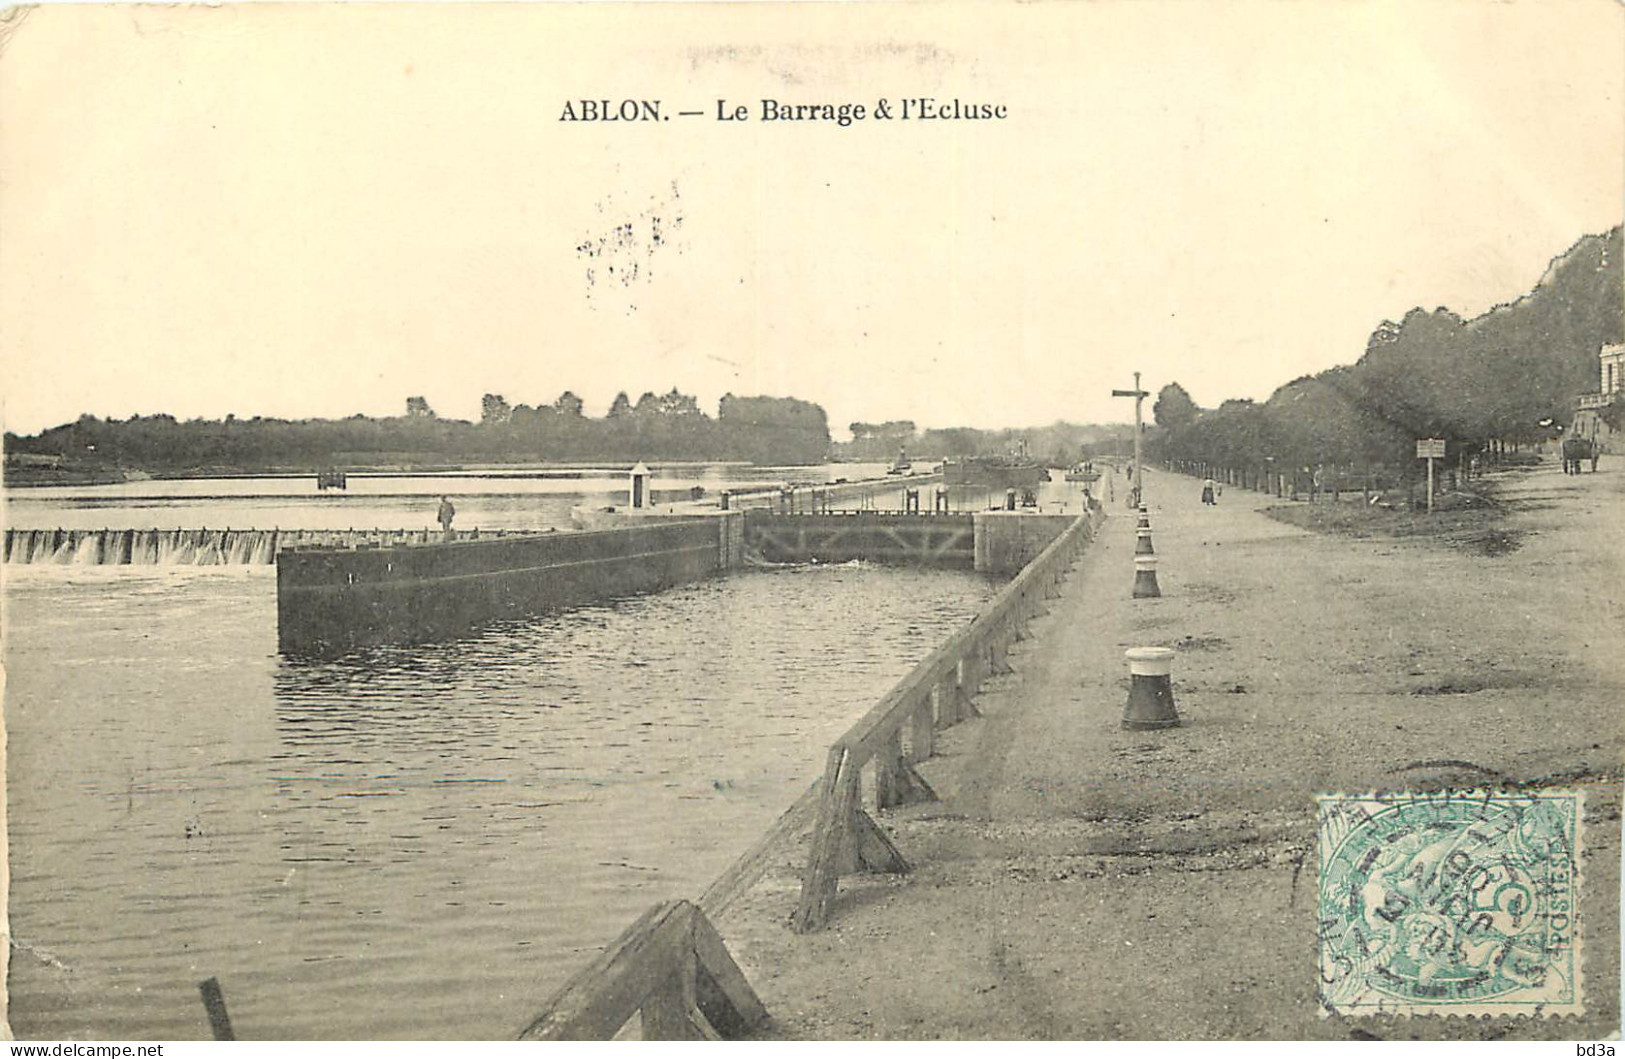  94  ABLON  LE BARRAGE & L'ECLUSE - Ablon Sur Seine